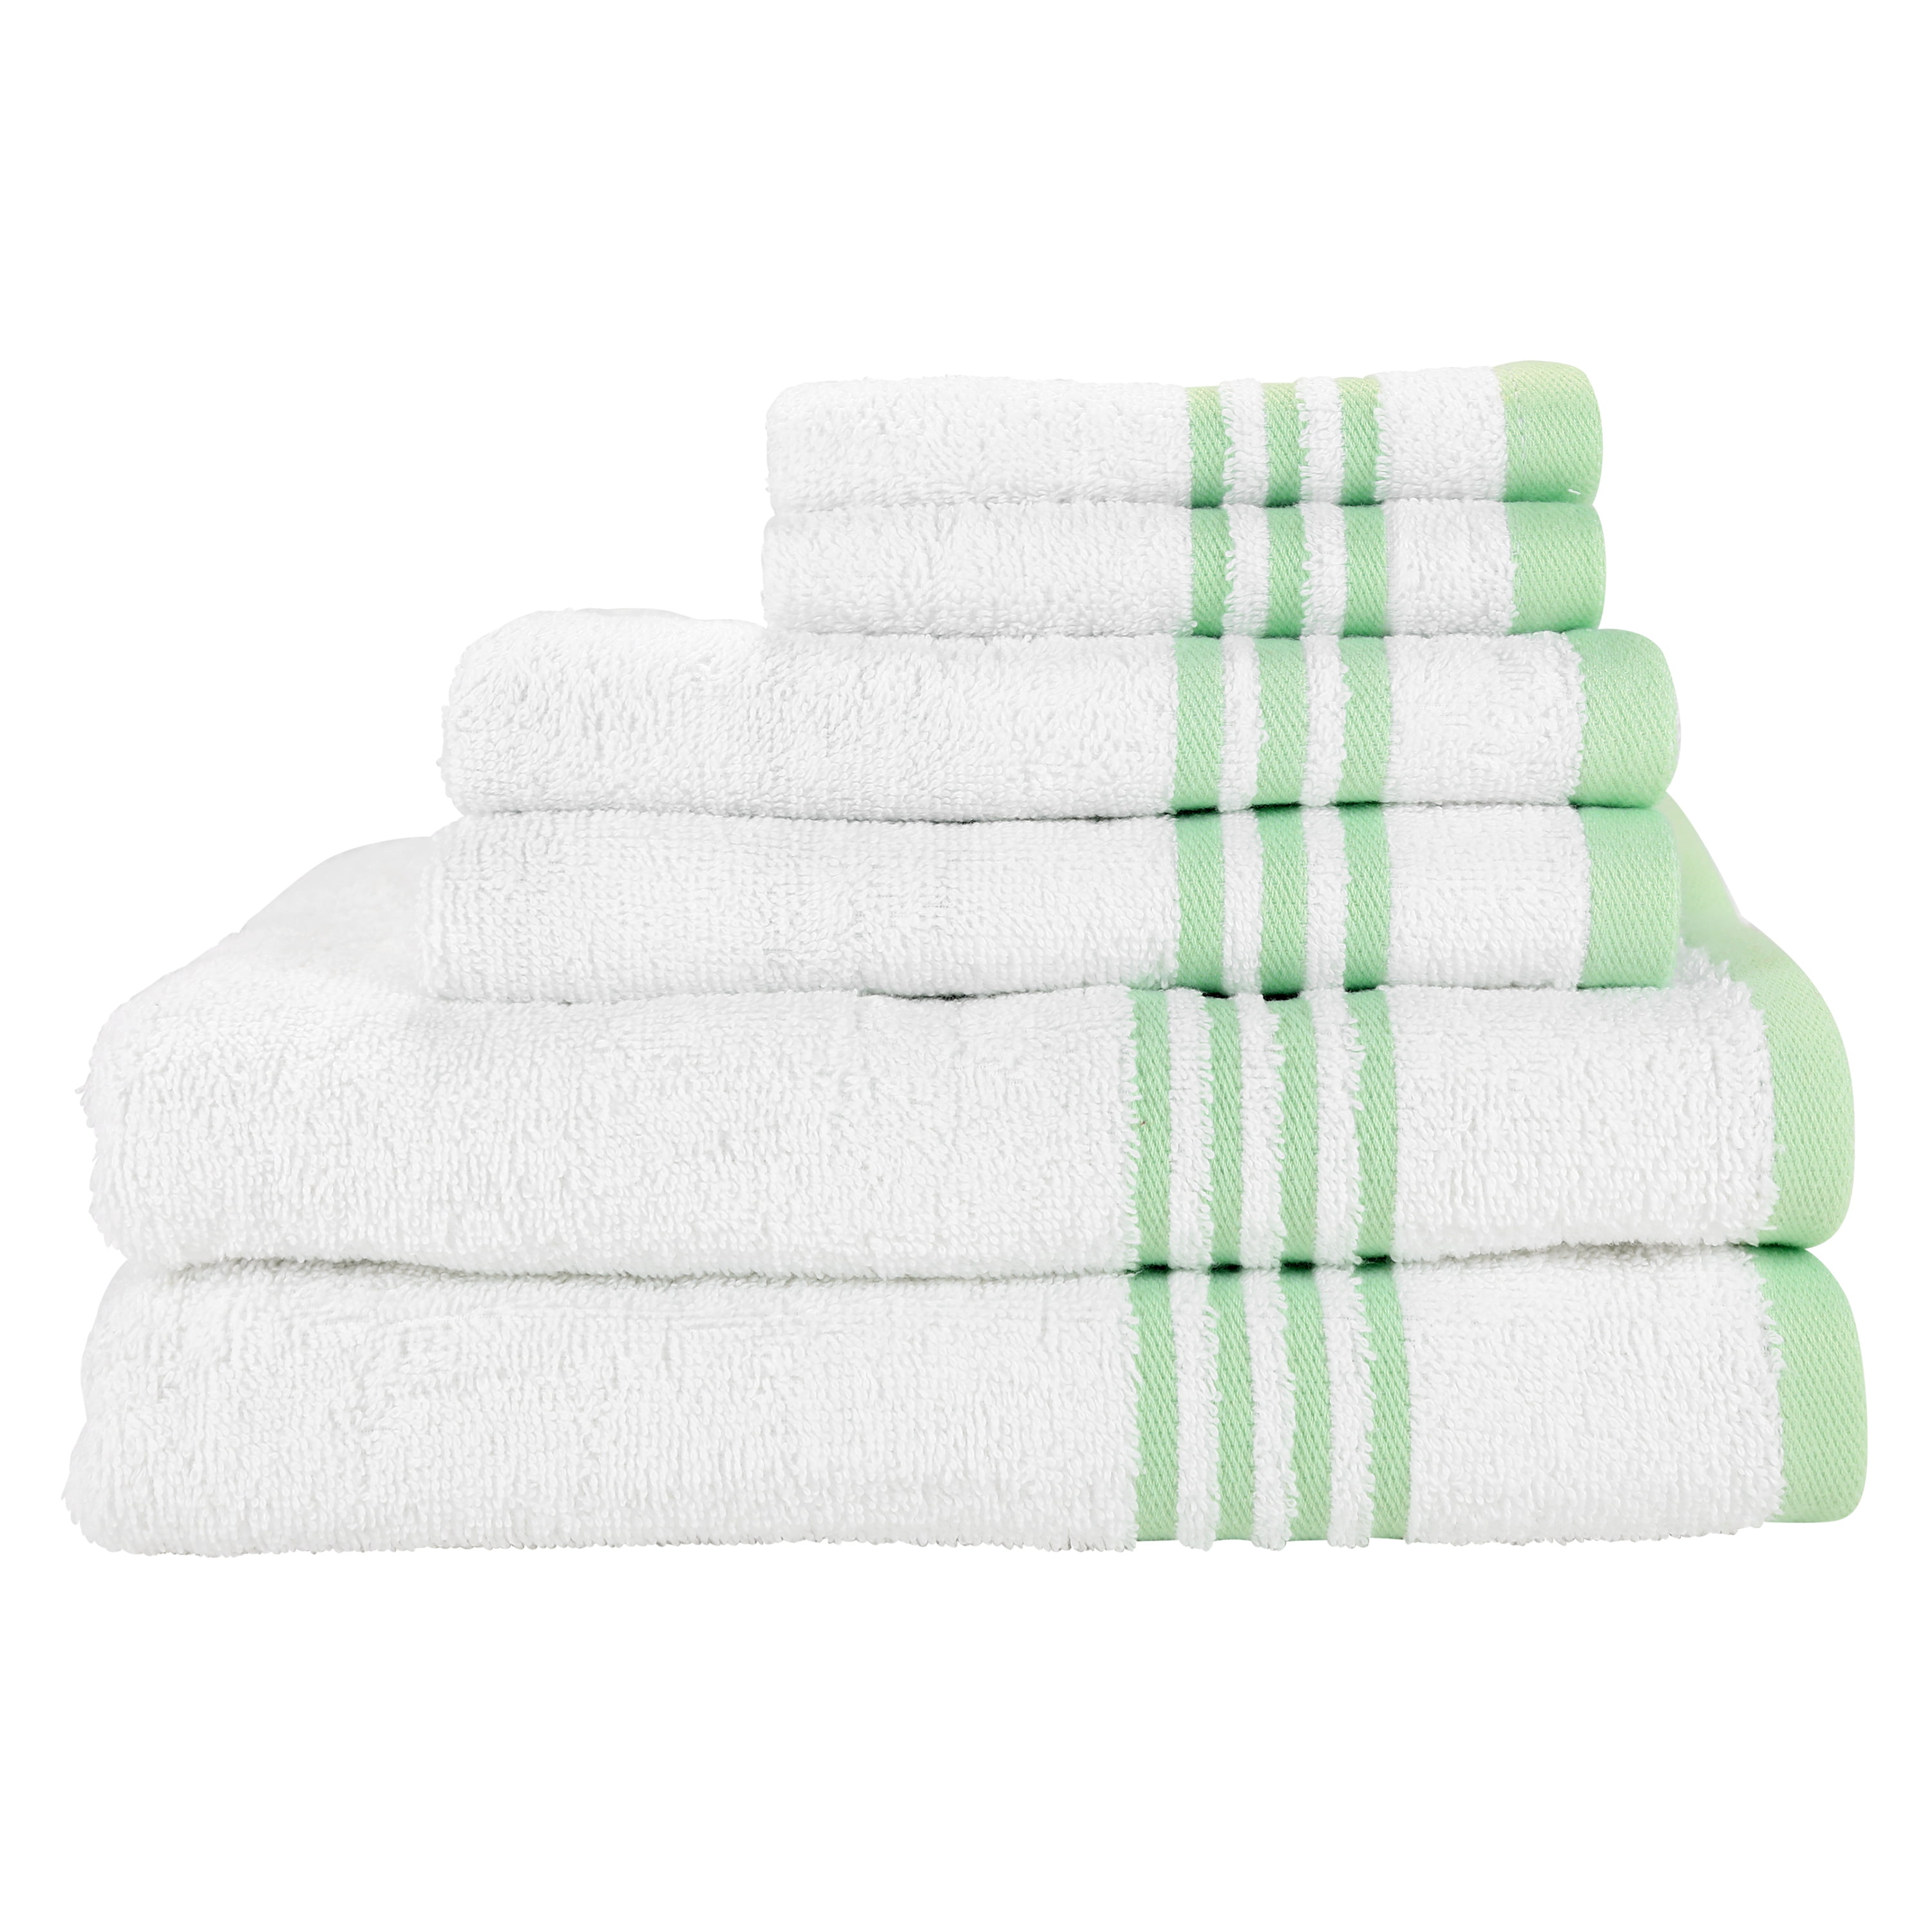 Cheap Towels Bath Hand Face 6 Piece Set 100% Pure Cotton Various Colors 